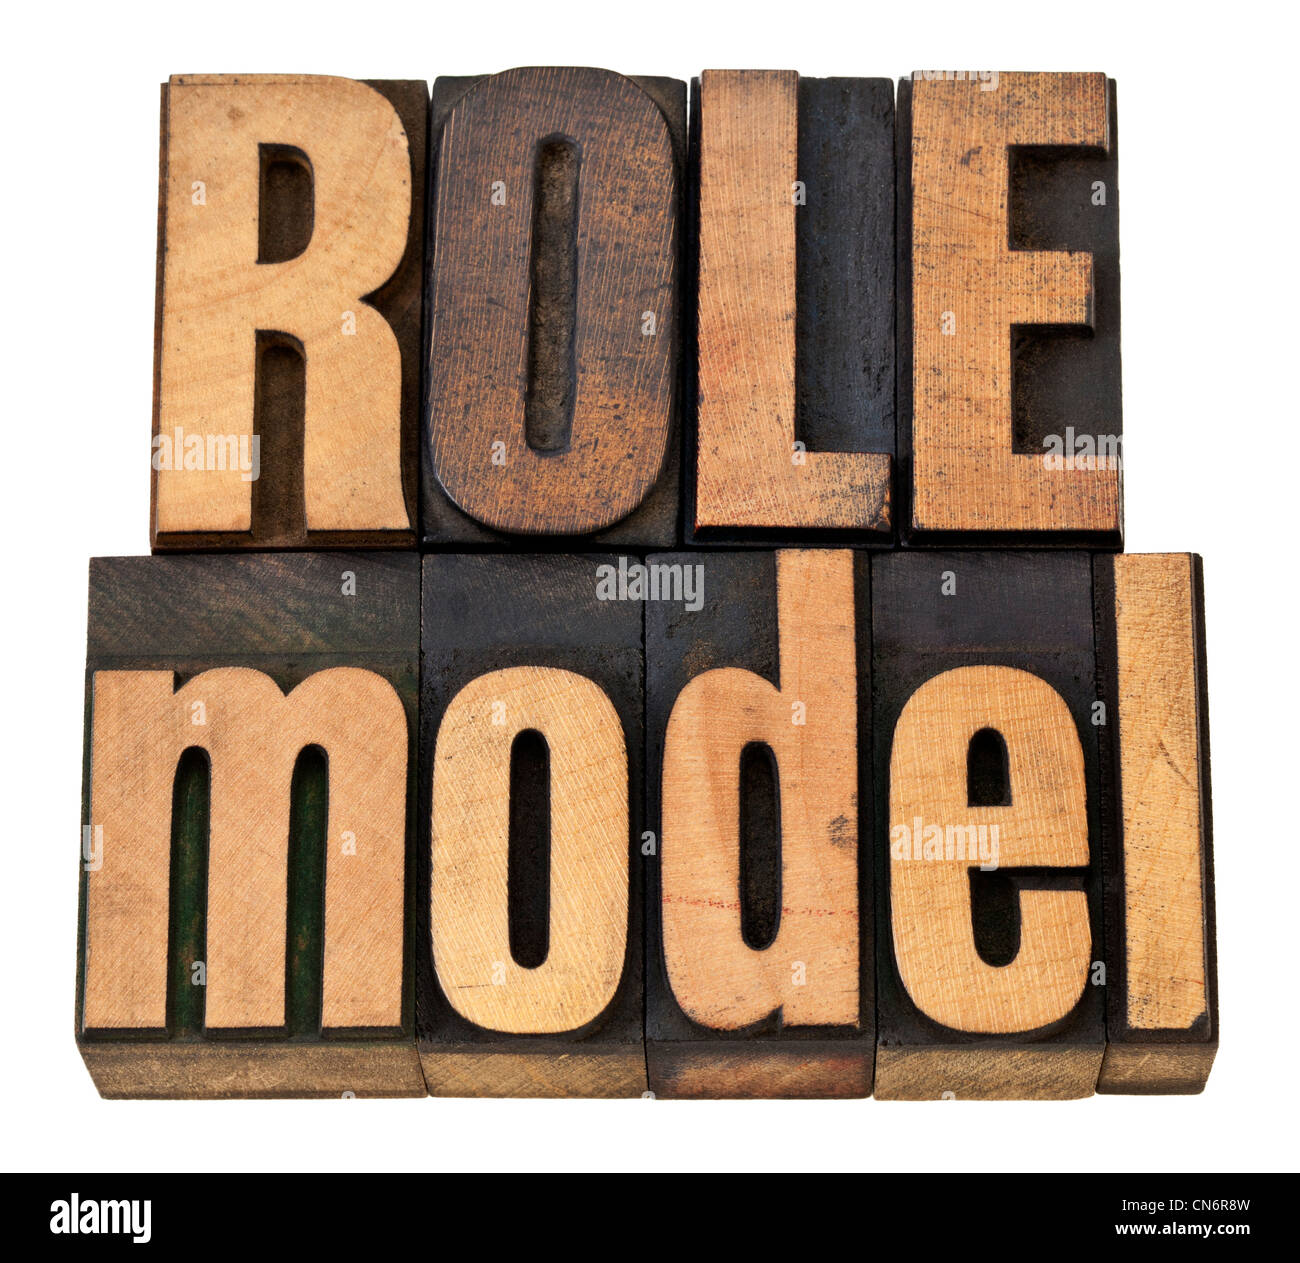 Modello di ruolo - concetto di leadership - isolato di una frase in rilievografia vintage tipo legno Foto Stock